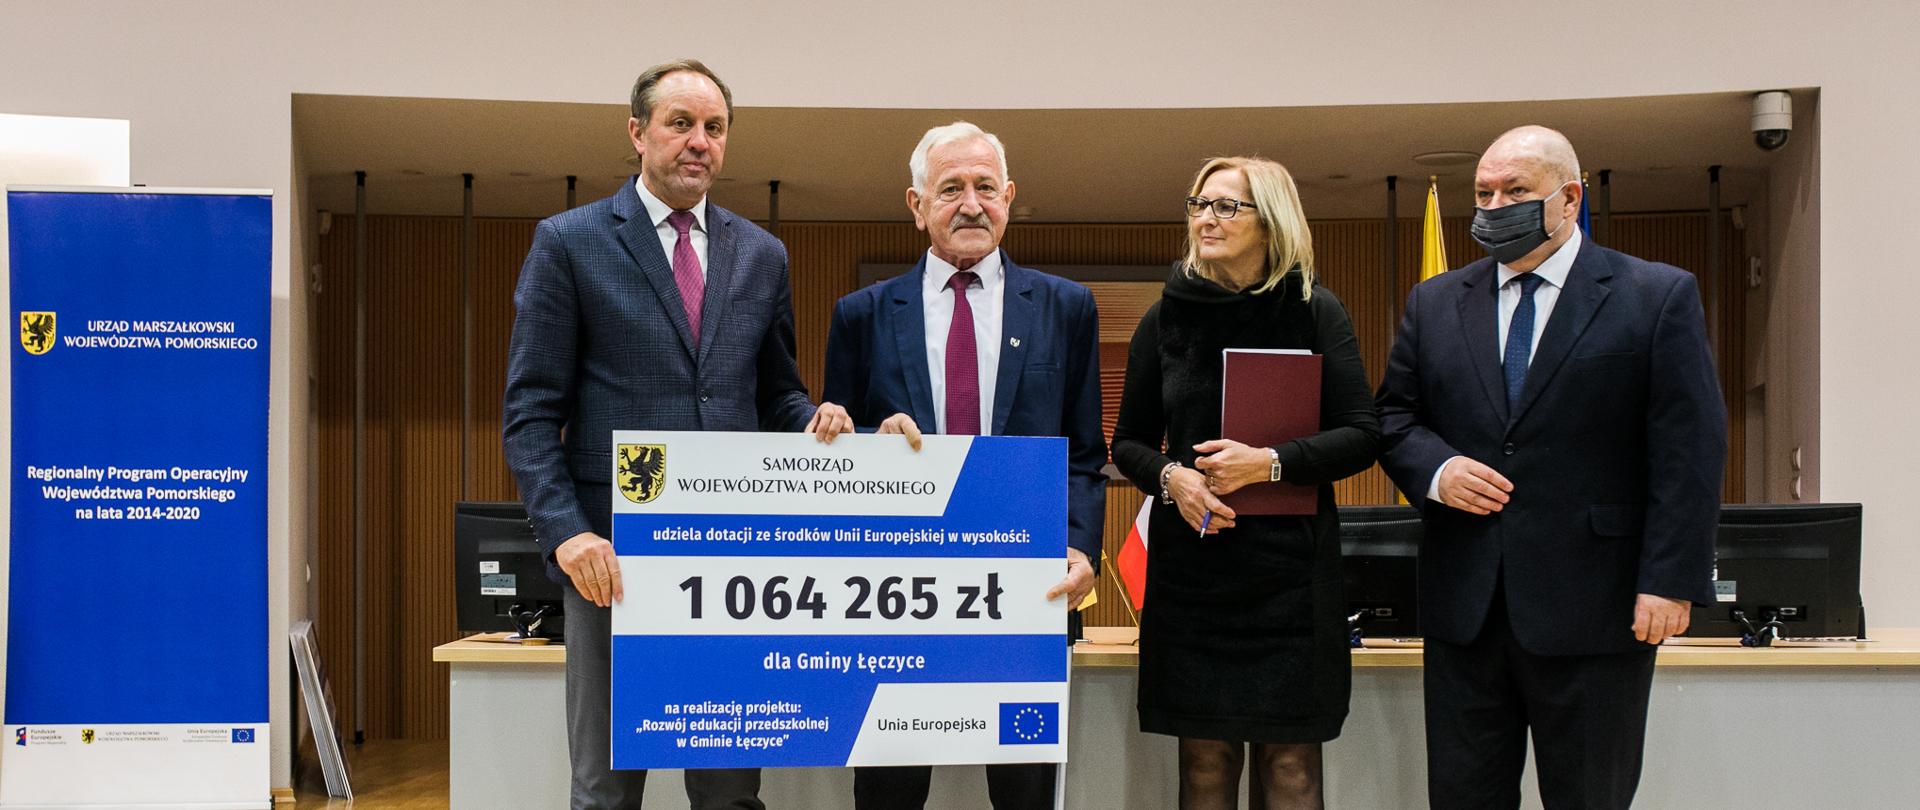 Zdjęcie Wójta i Marszałka trzymających kartę informującą o wysokości dofinansowania dla Gminy Łęczyce, pozujących do zdjęcia wraz ze Skarbnikiem Gminy Łęczyce i Wicemarszałkiem